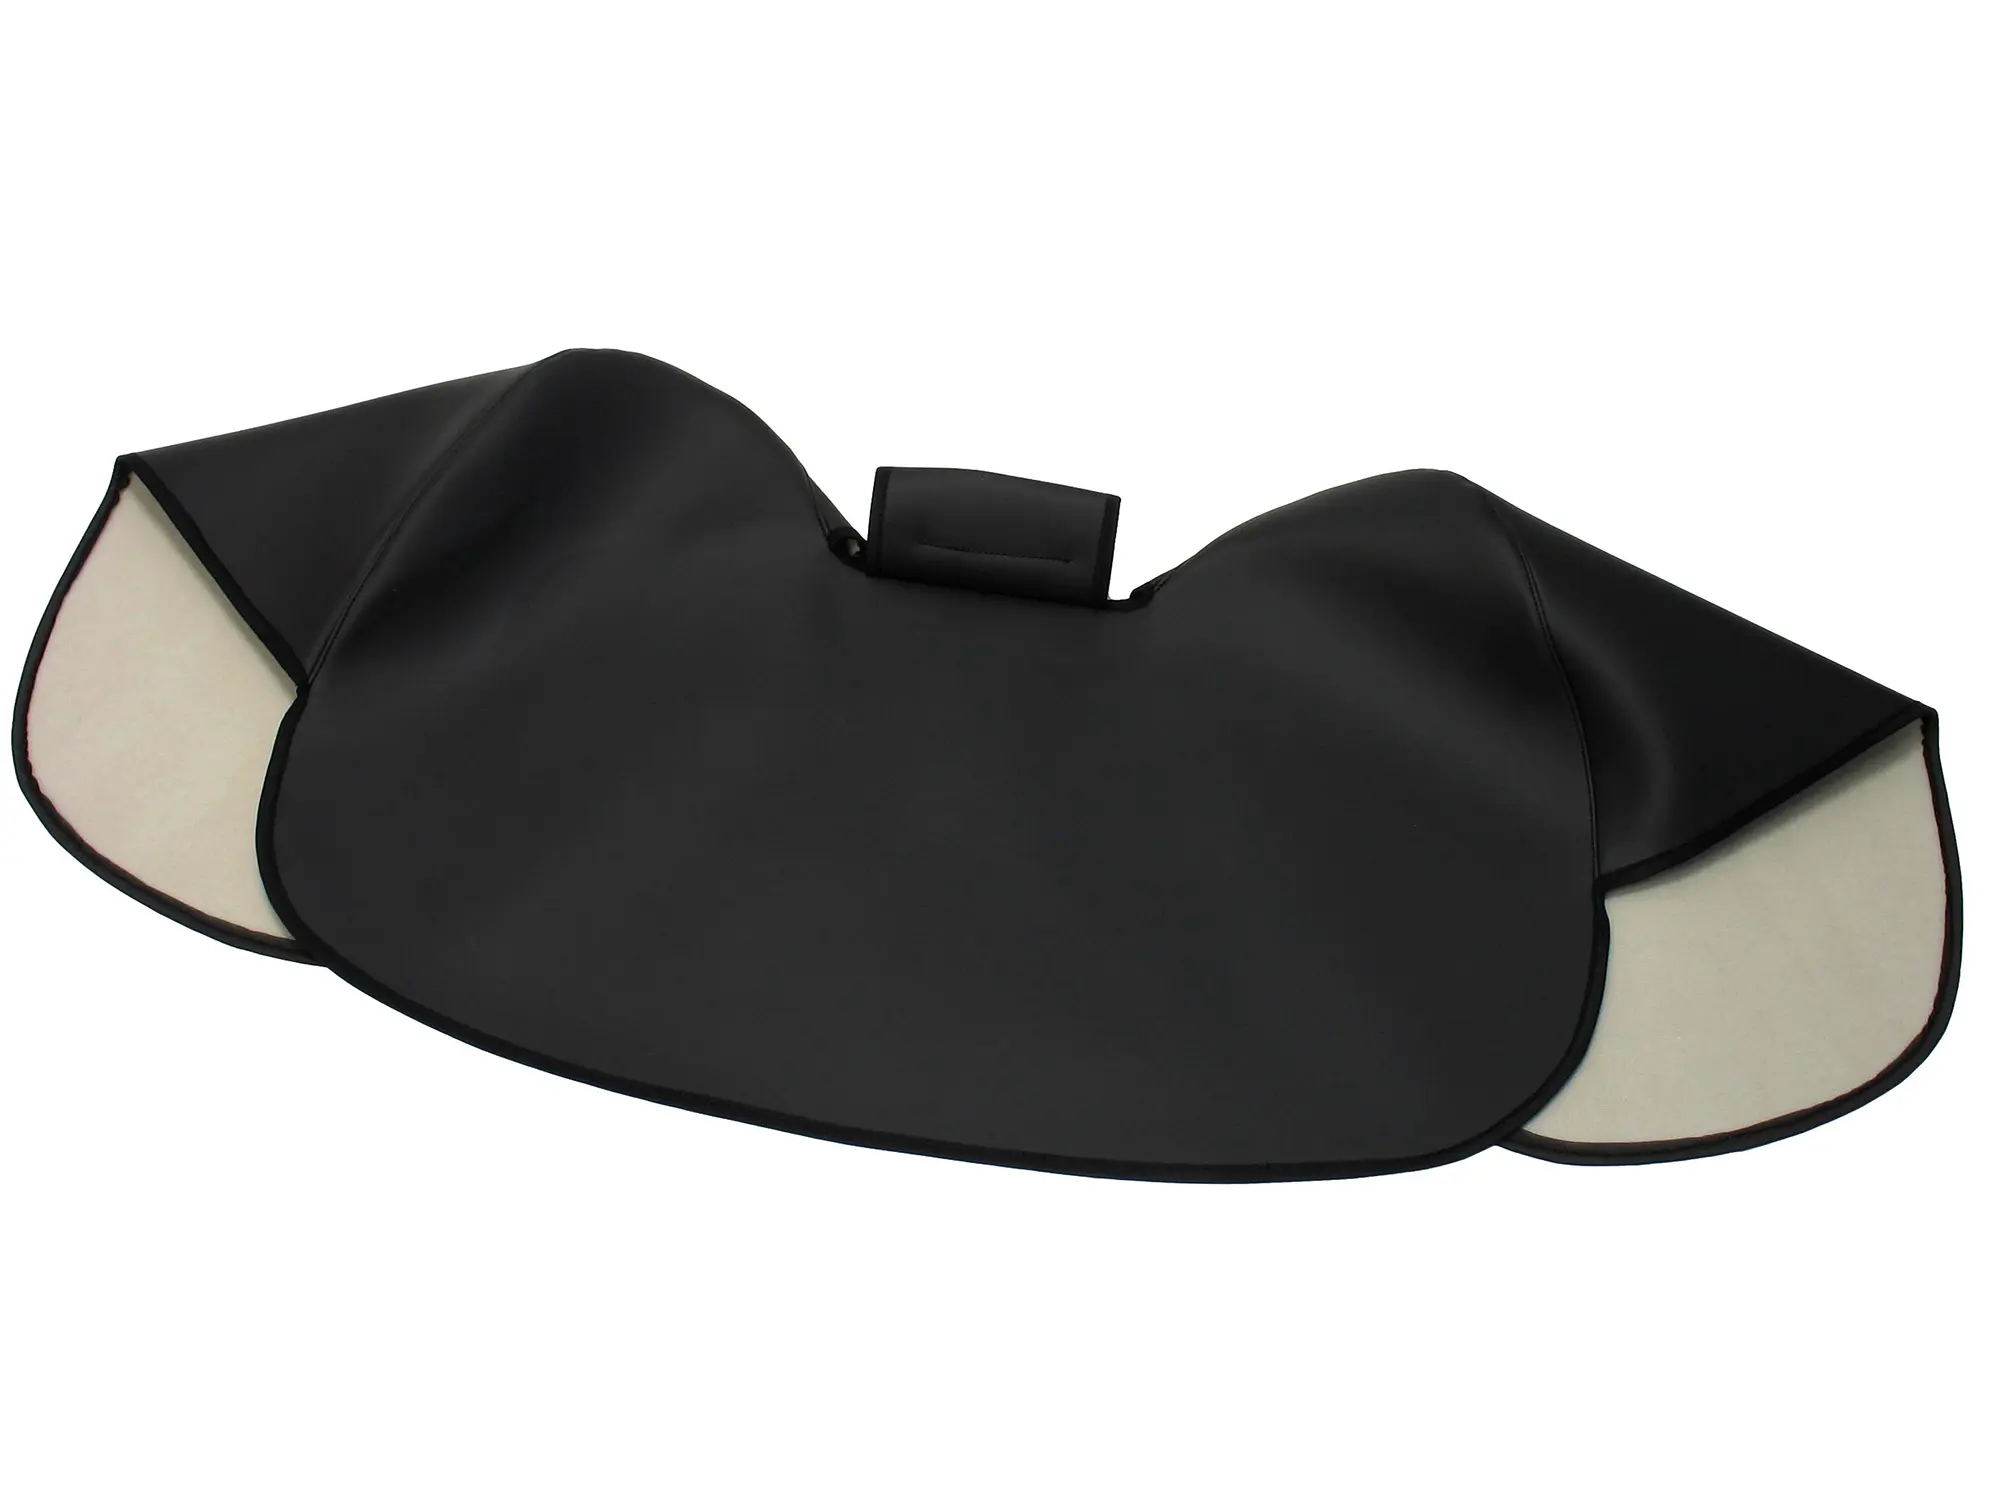 B-Ware - Knieschutzdecke schwarz, gefüttert, Handarbeit - für Simson S50, S51, S70, Art.-Nr.: 99002219 - Bild 1